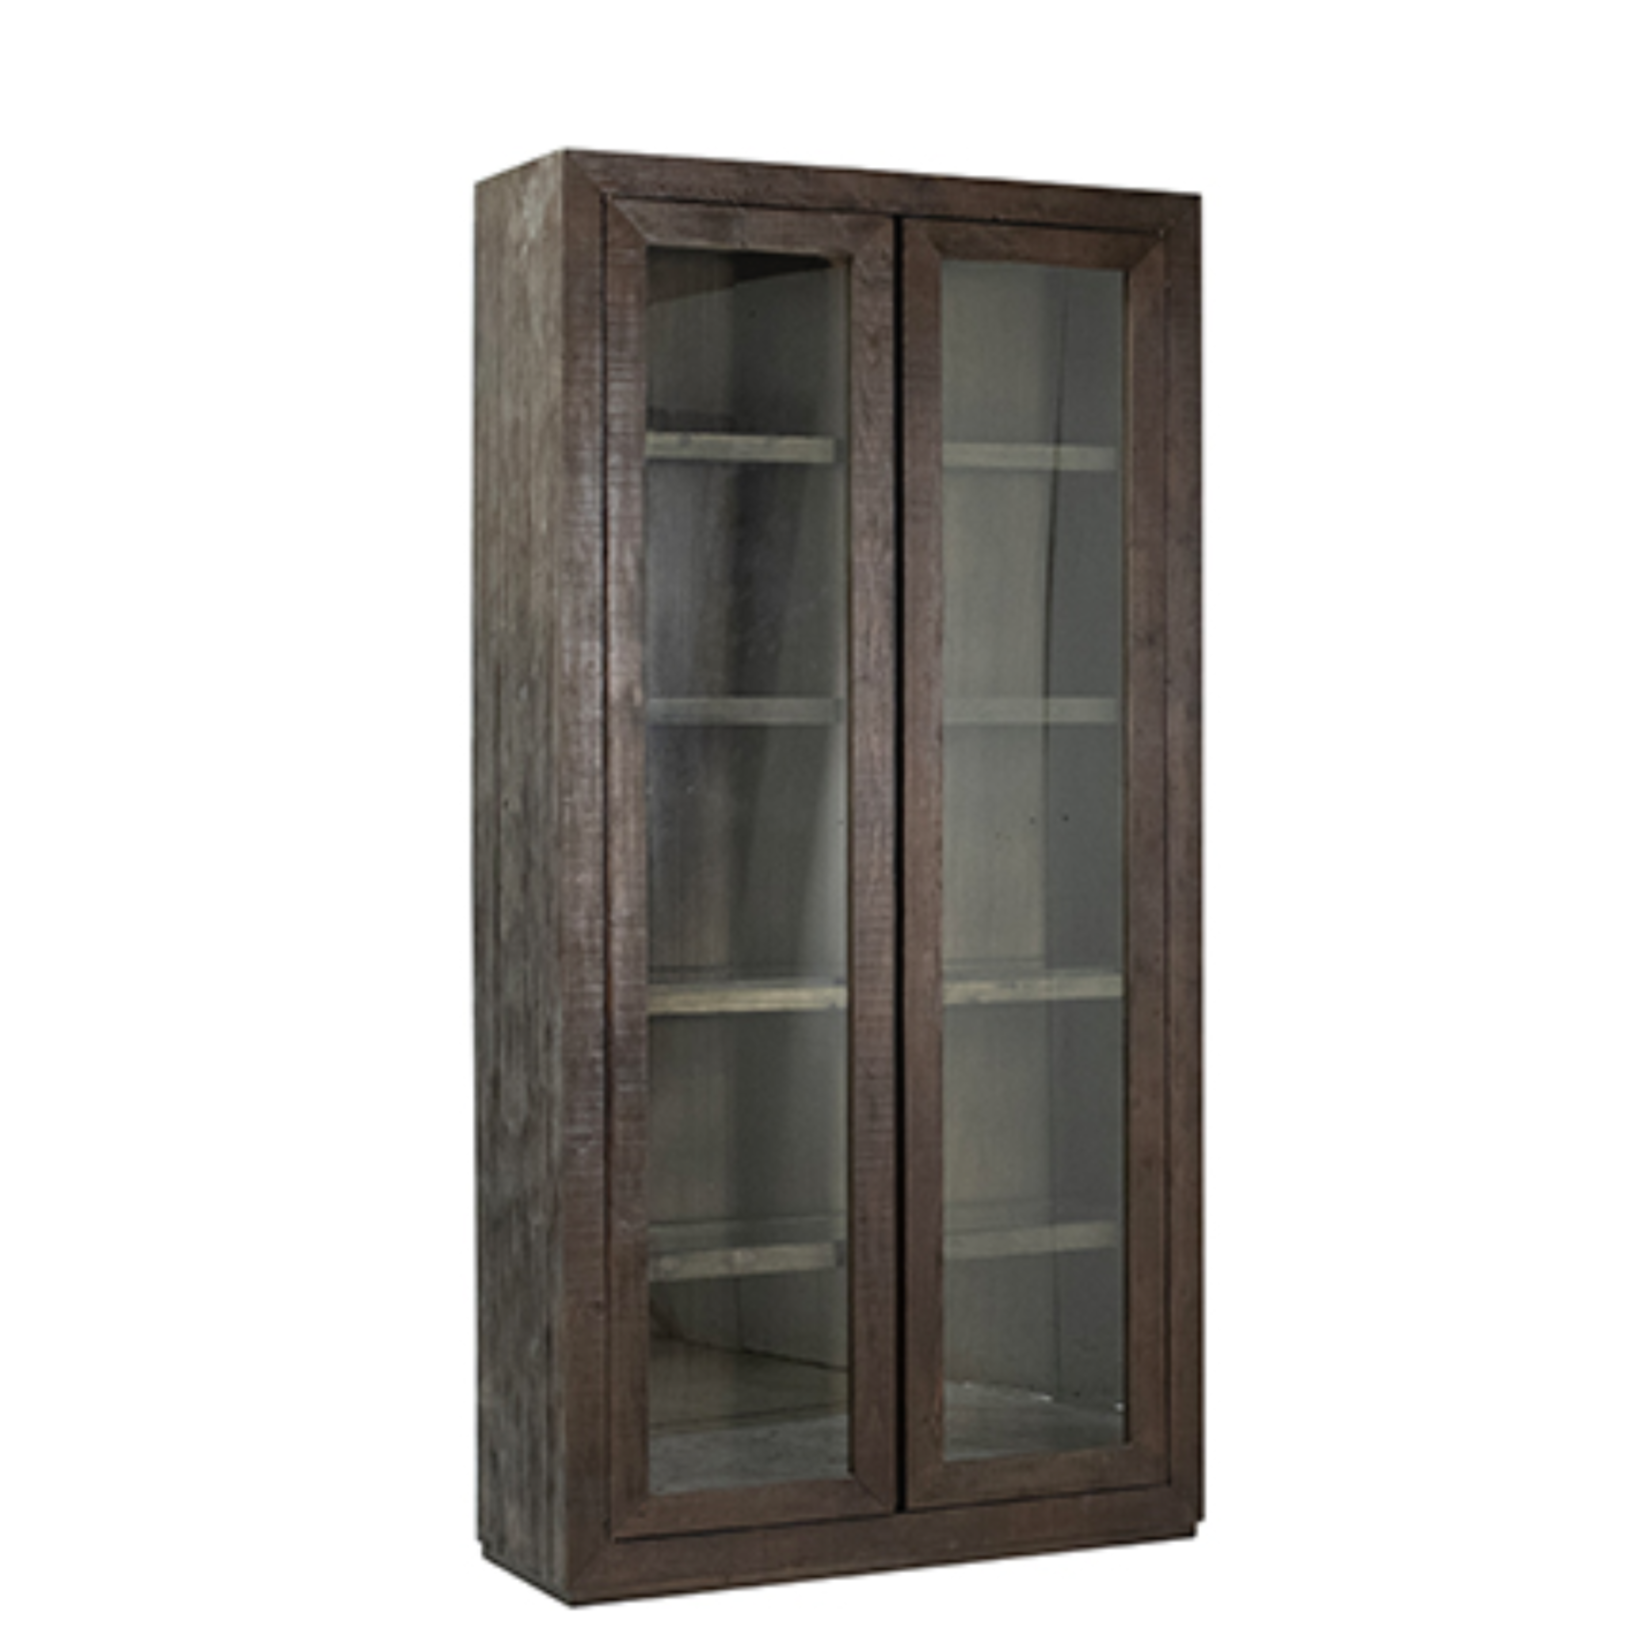 91x18x45 Suffolk Reclaimed Pine Wood Dark Brown Cabinet